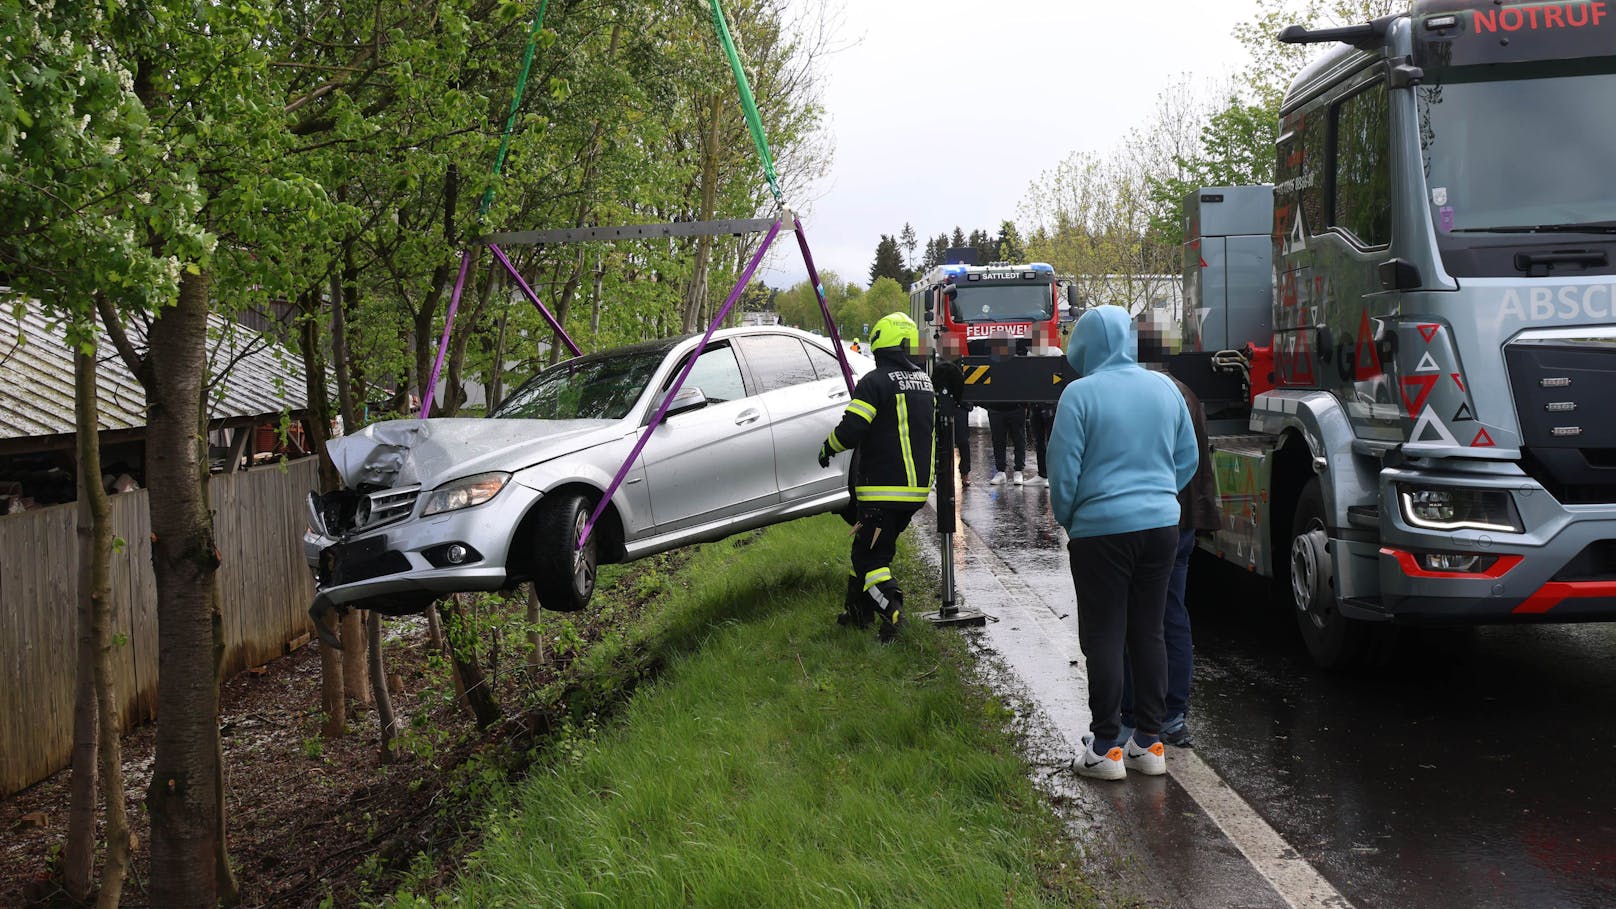 Der Mercedes kam während eines intensiven Graupelschauers von der Fahrbahn ab, geriet in die Böschung und krachte dort gegen einen Baum.